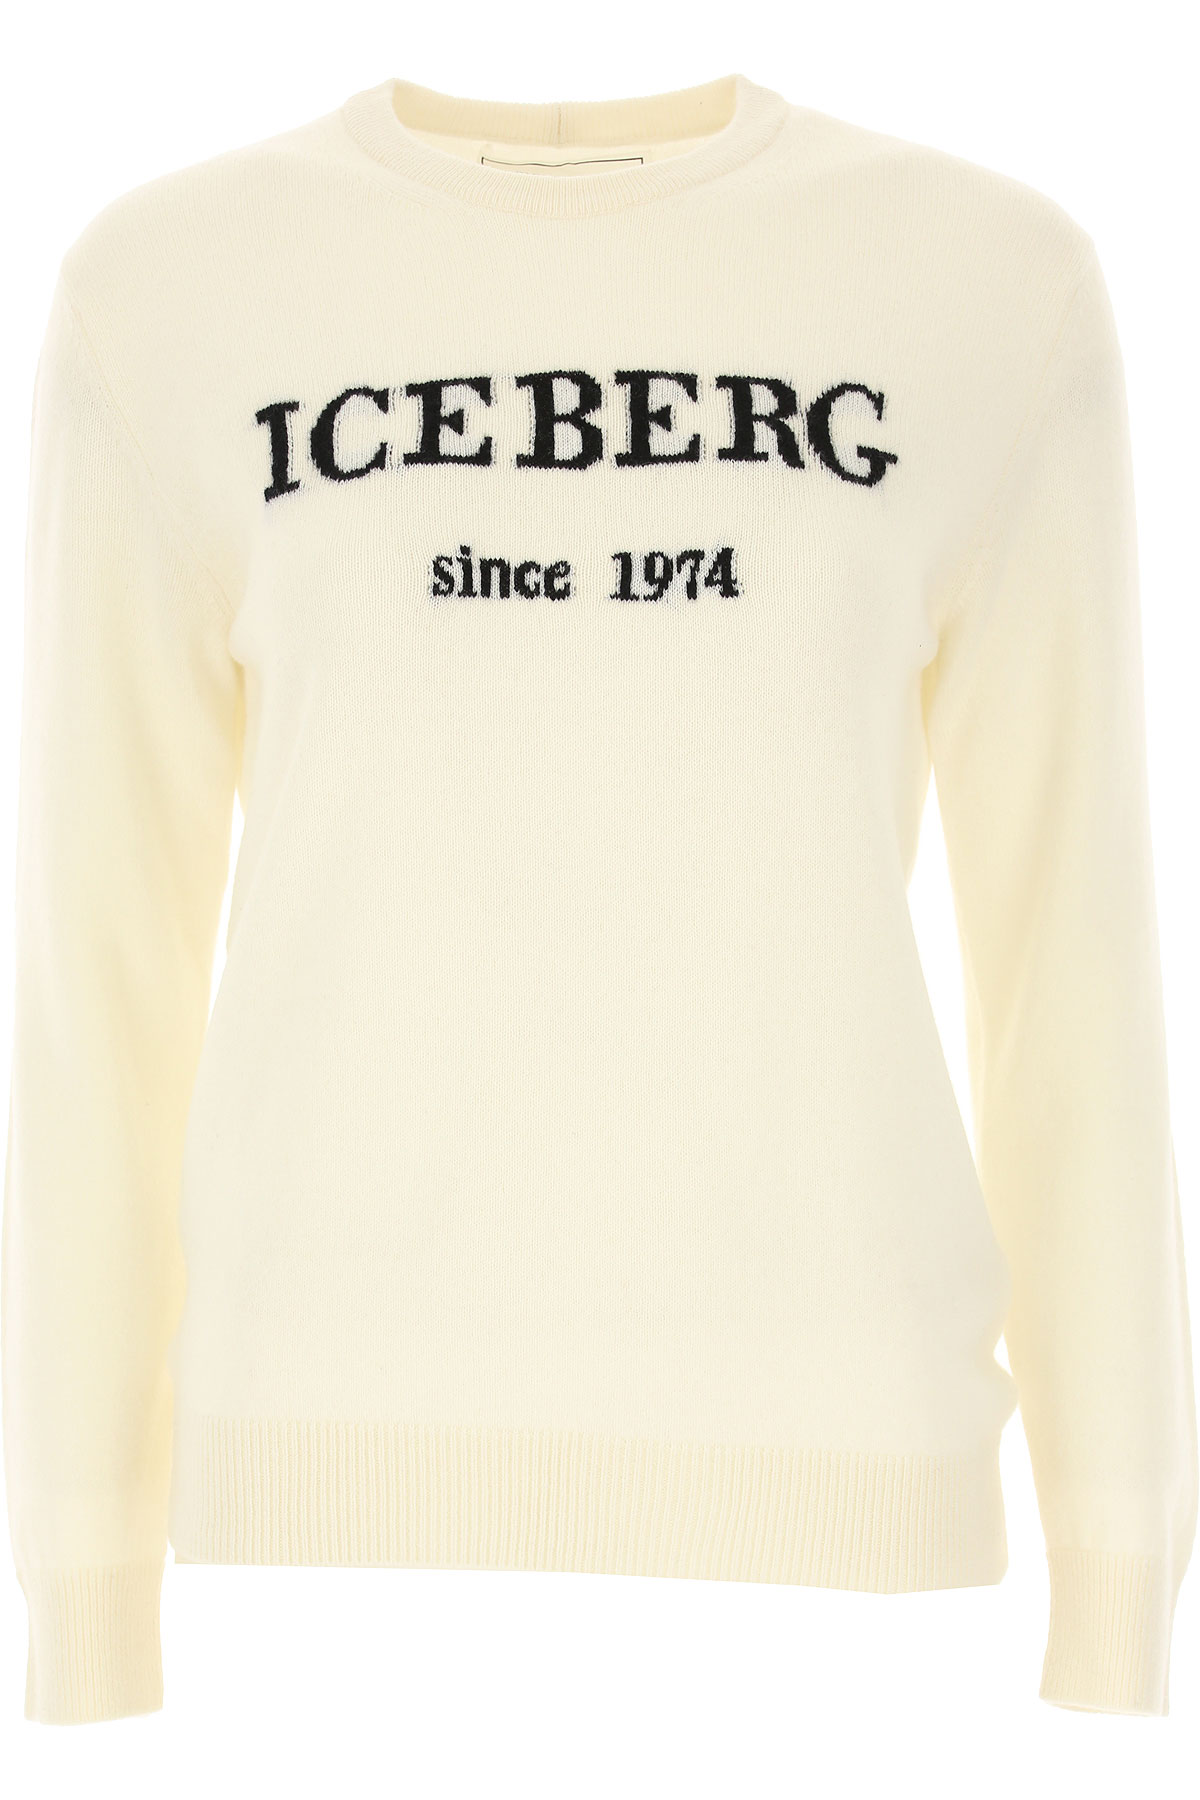 iceberg clothing wiki